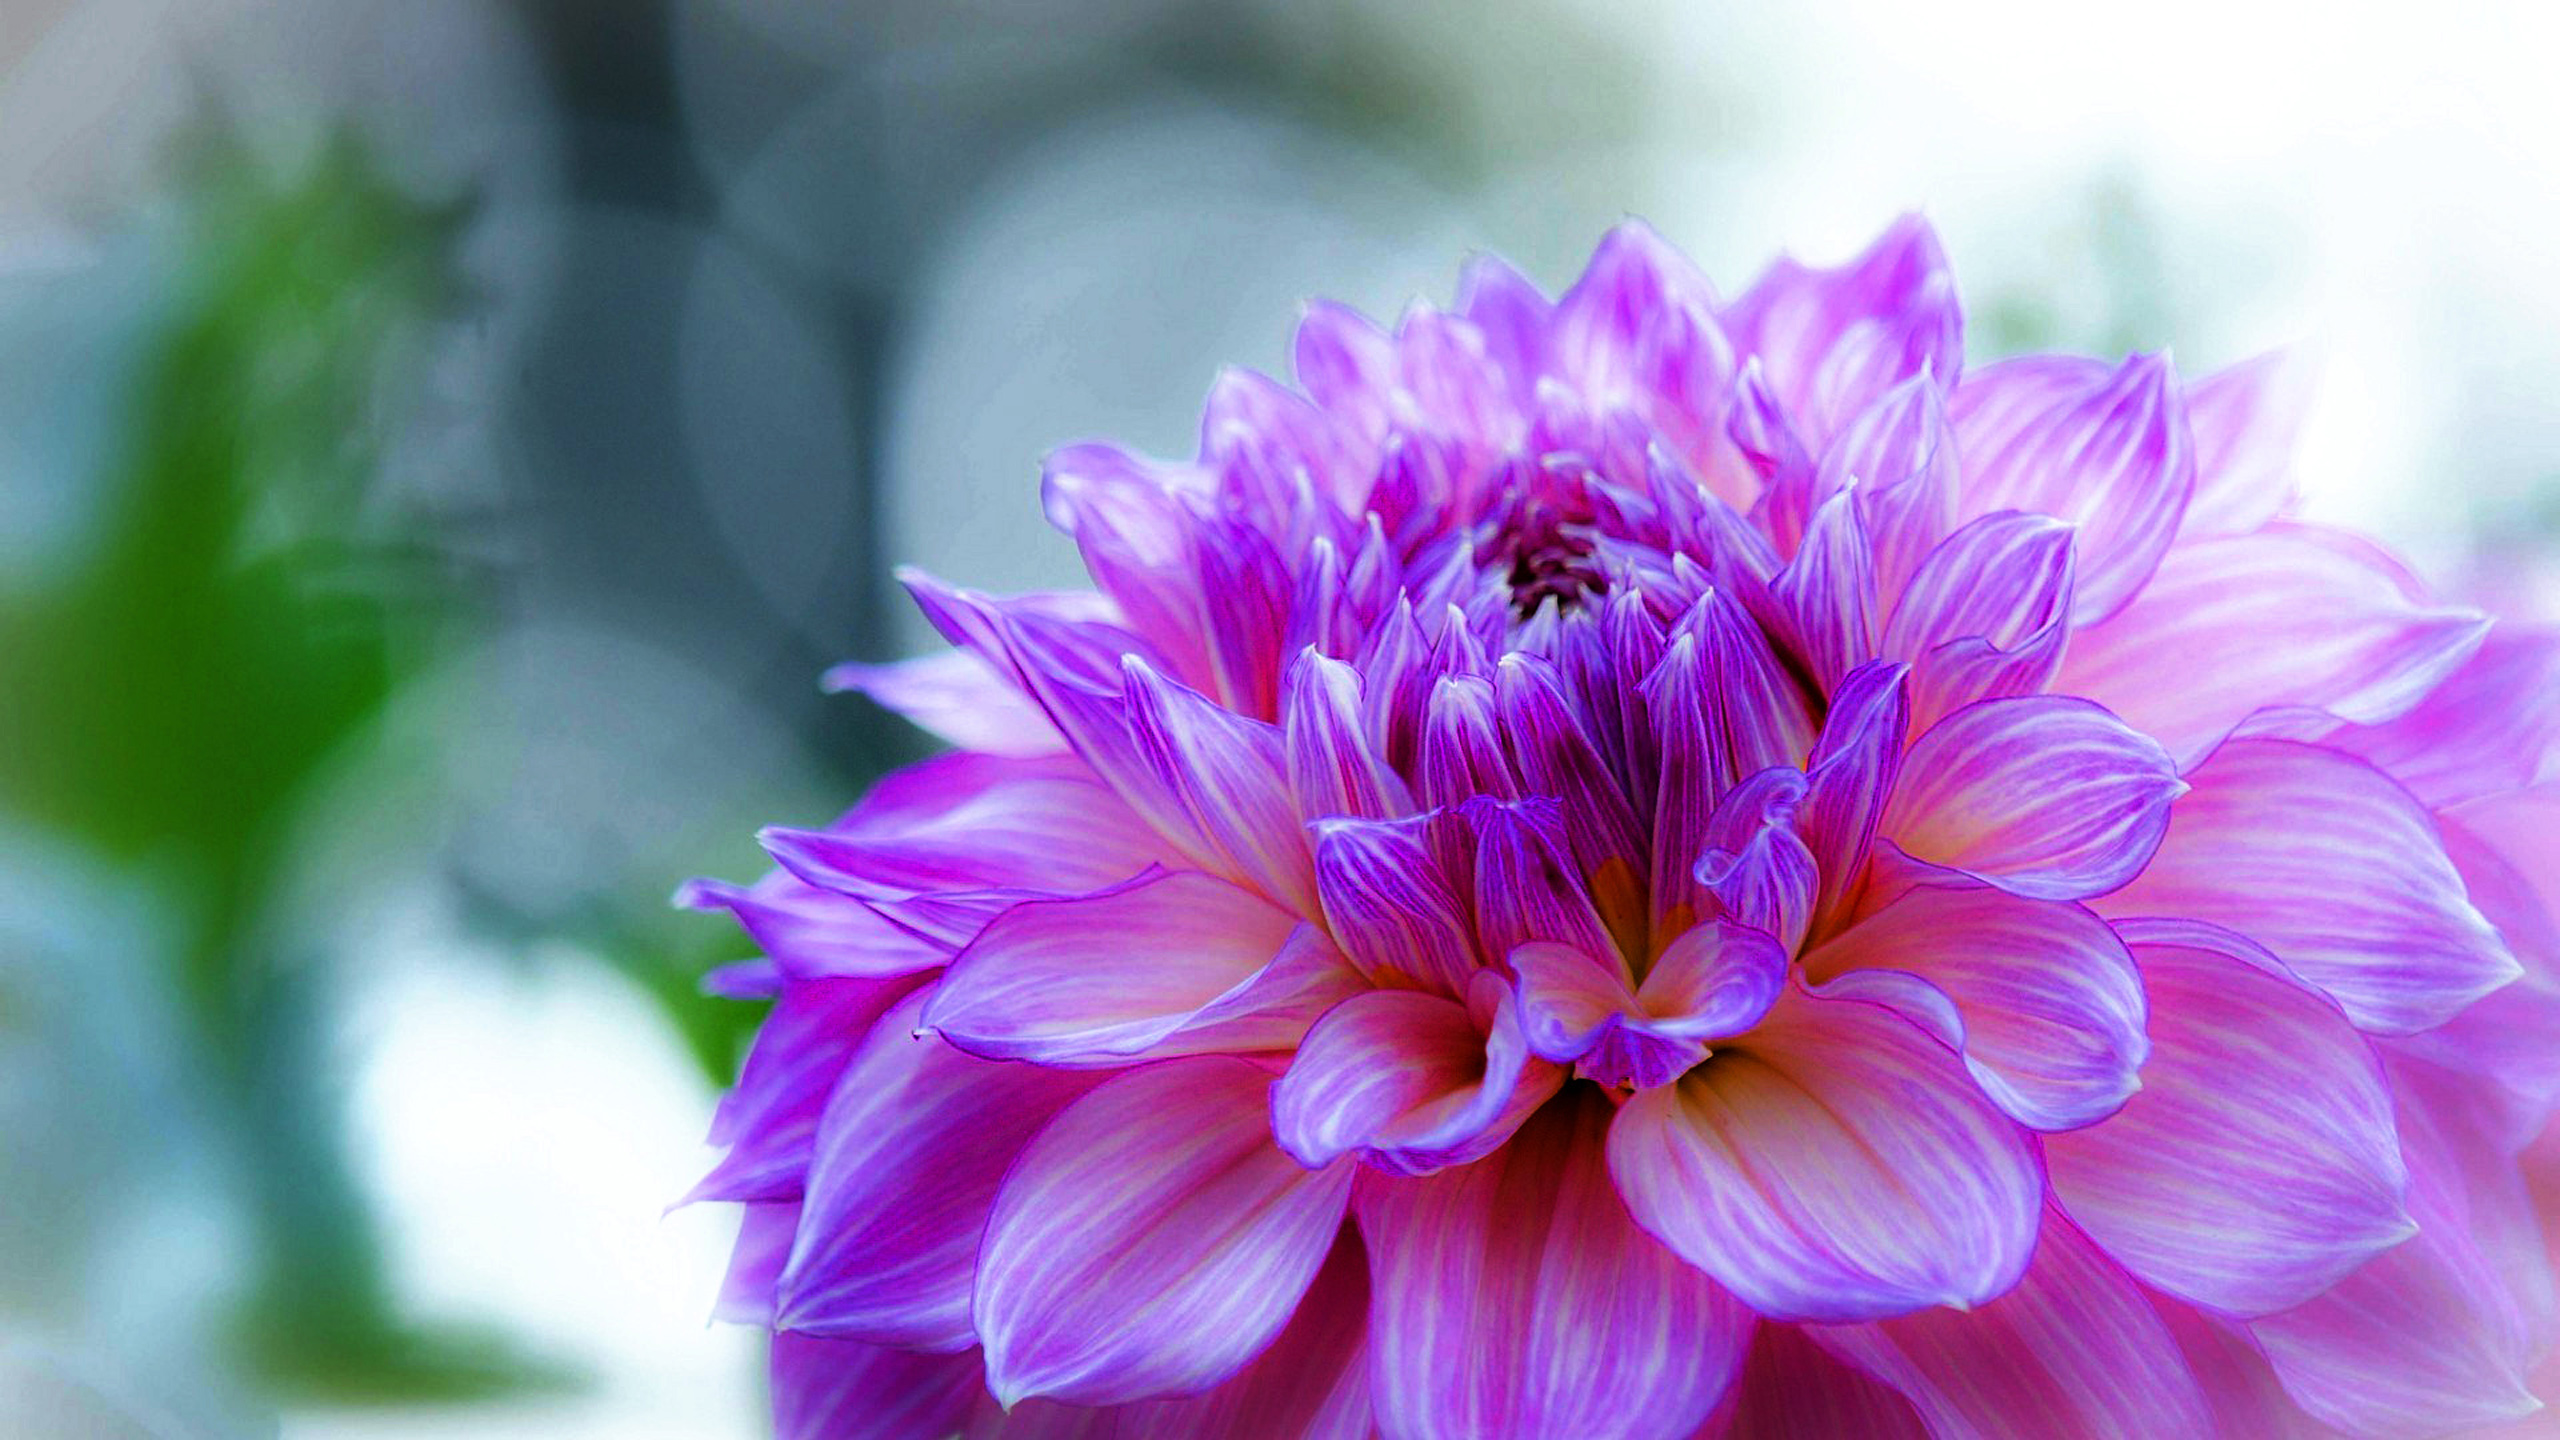 Dahlia Delicate Purple Flower Desktop Wallpaper Hd 2560x1440 ...